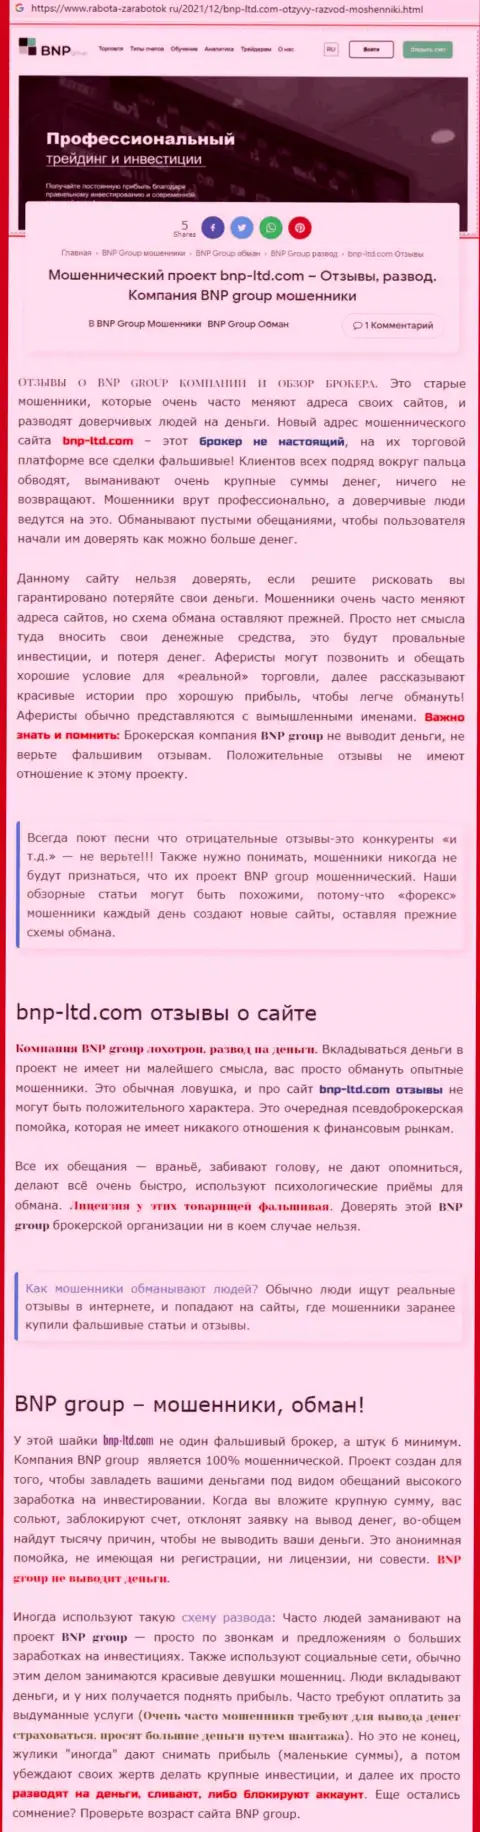 О перечисленных в организацию BNPLtd Net финансовых средствах можете и не вспоминать, отжимают все до последнего рубля (обзор)